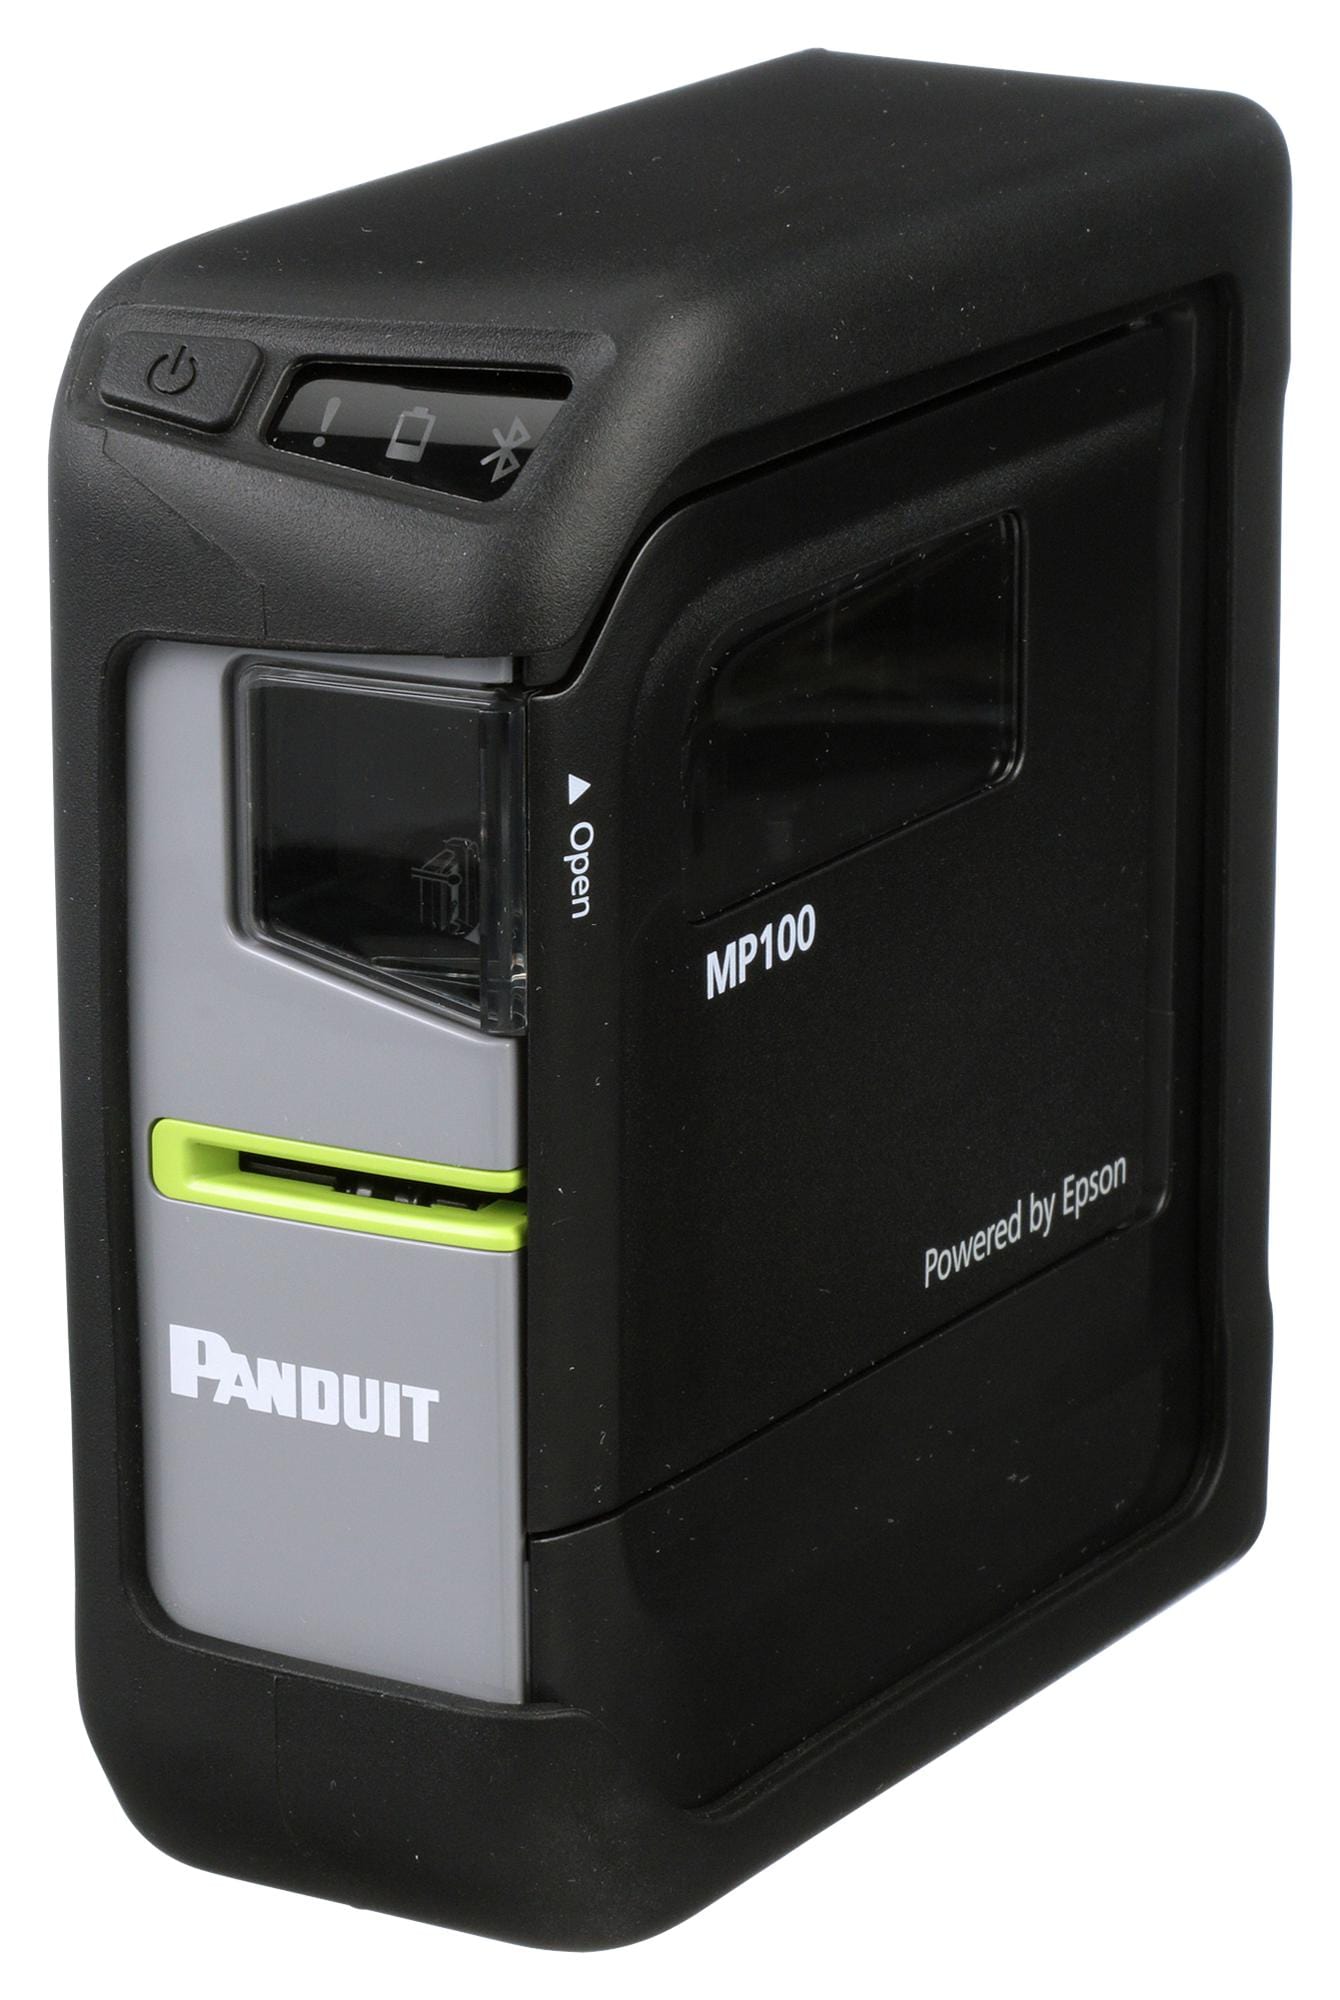 PANDUIT Label Printer MP100/E PORTABLE LABEL PRINTER, THERMAL TRANSFER PANDUIT 3498706 MP100/E